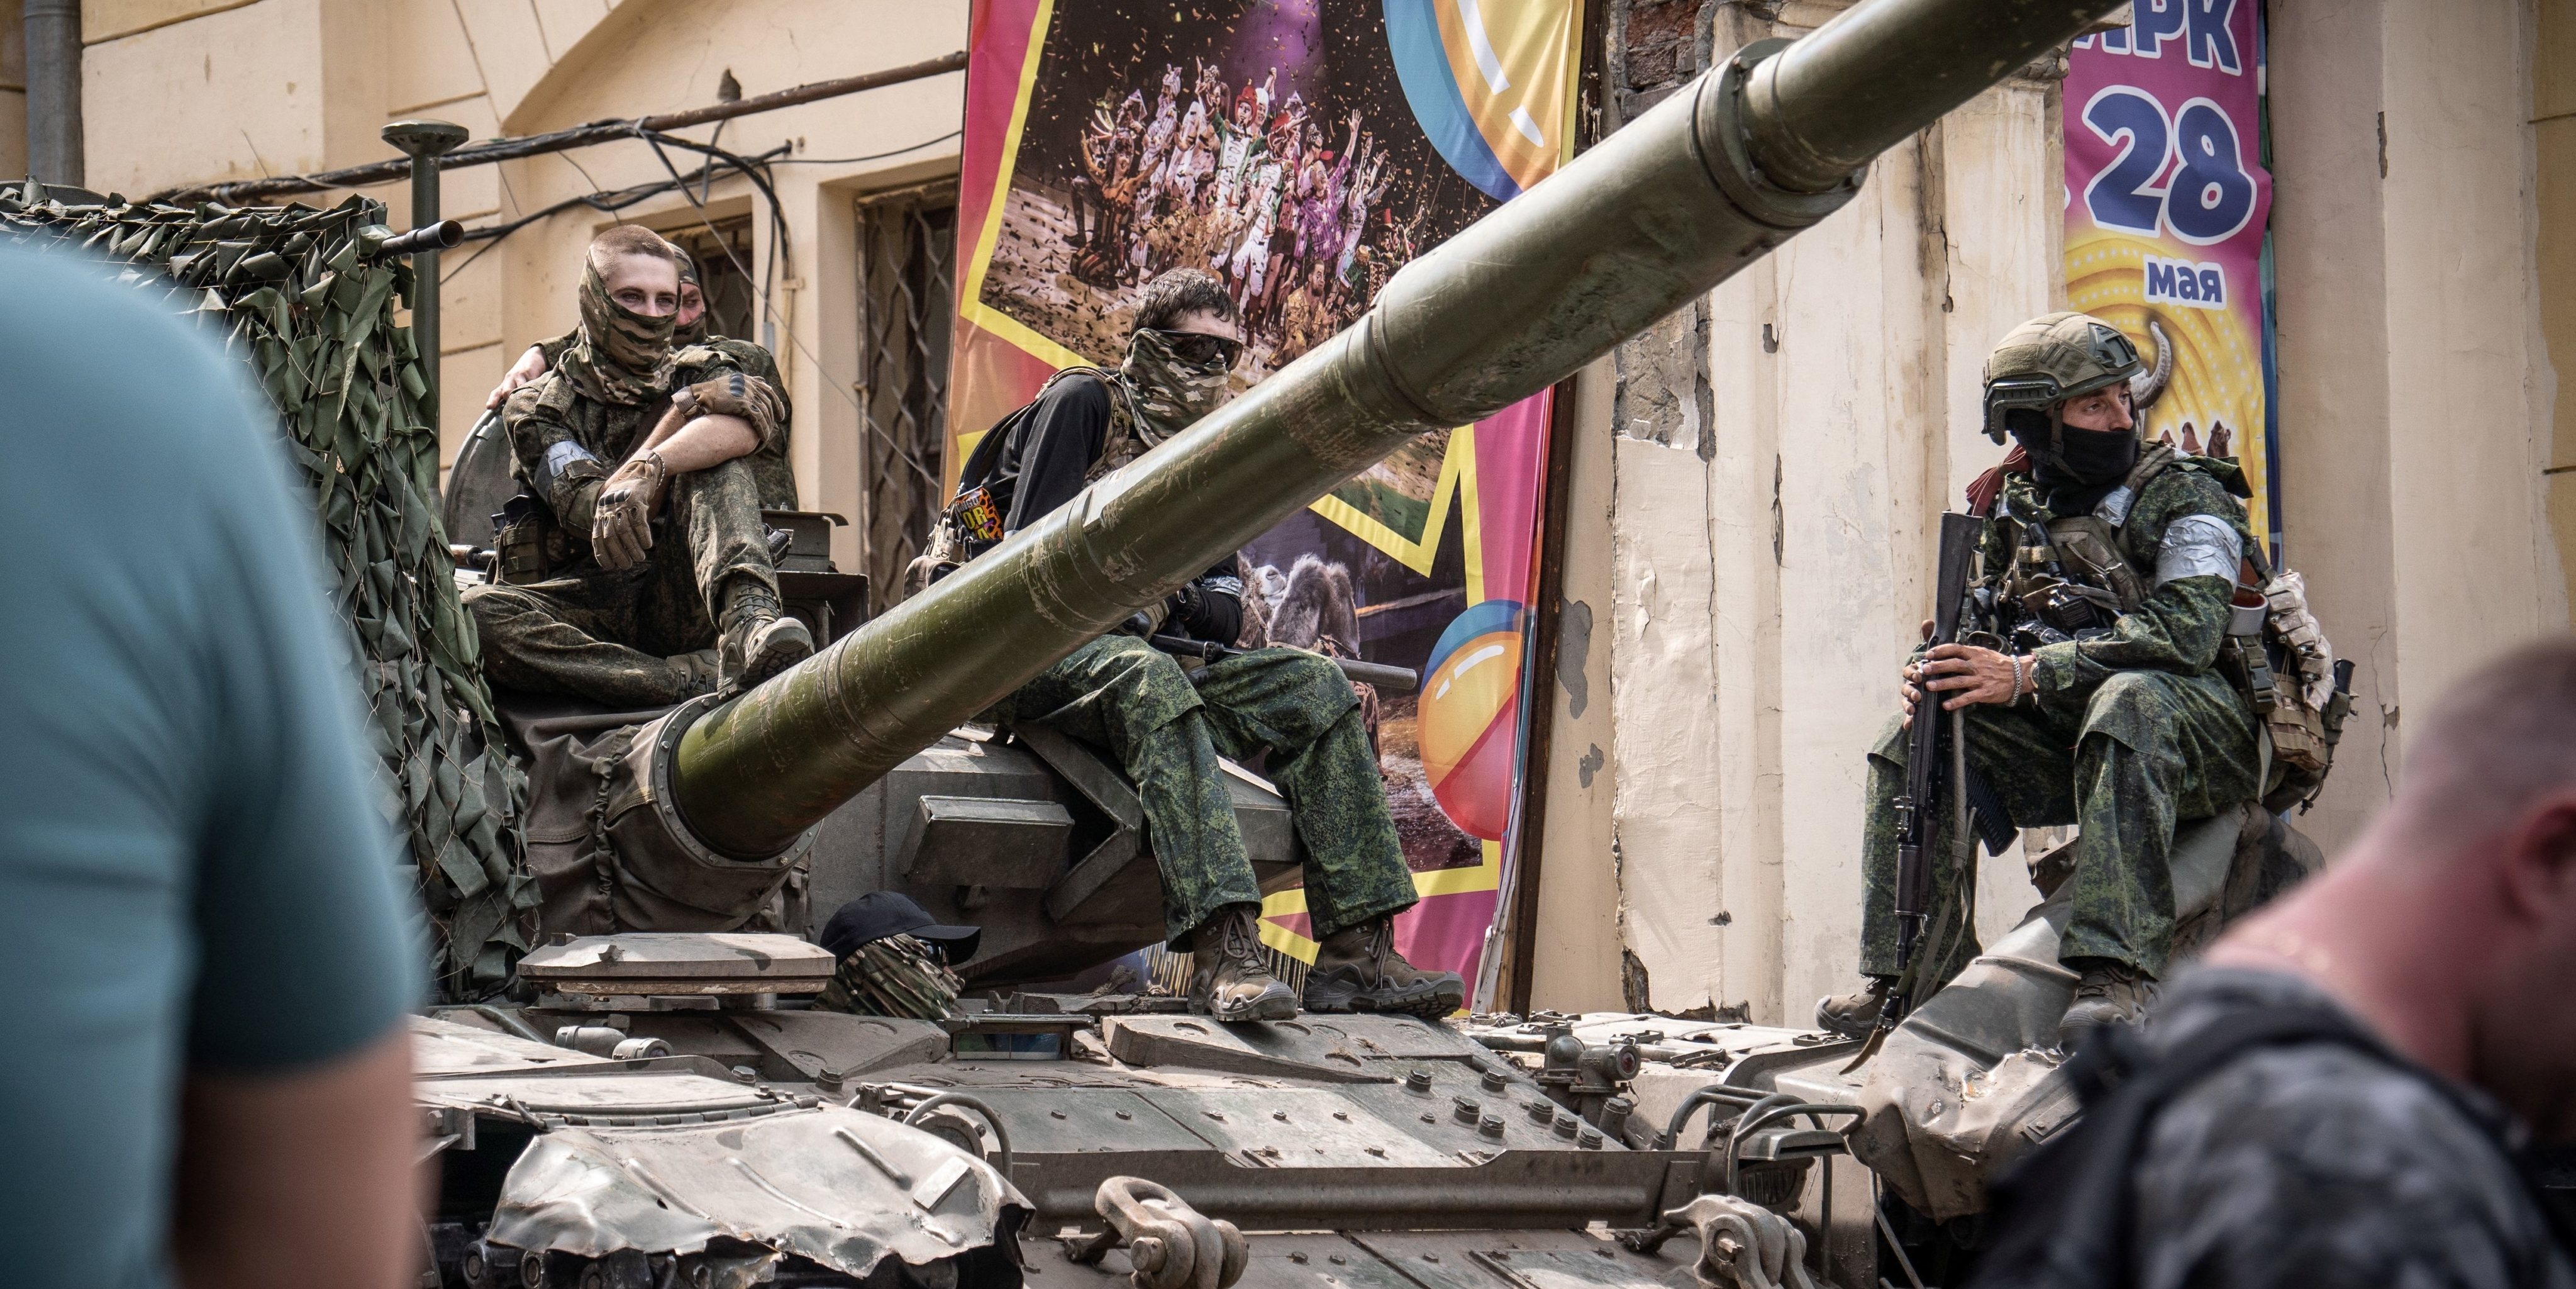 Por que a invasão da Crimeia em 2014 é relevante agora - BBC News